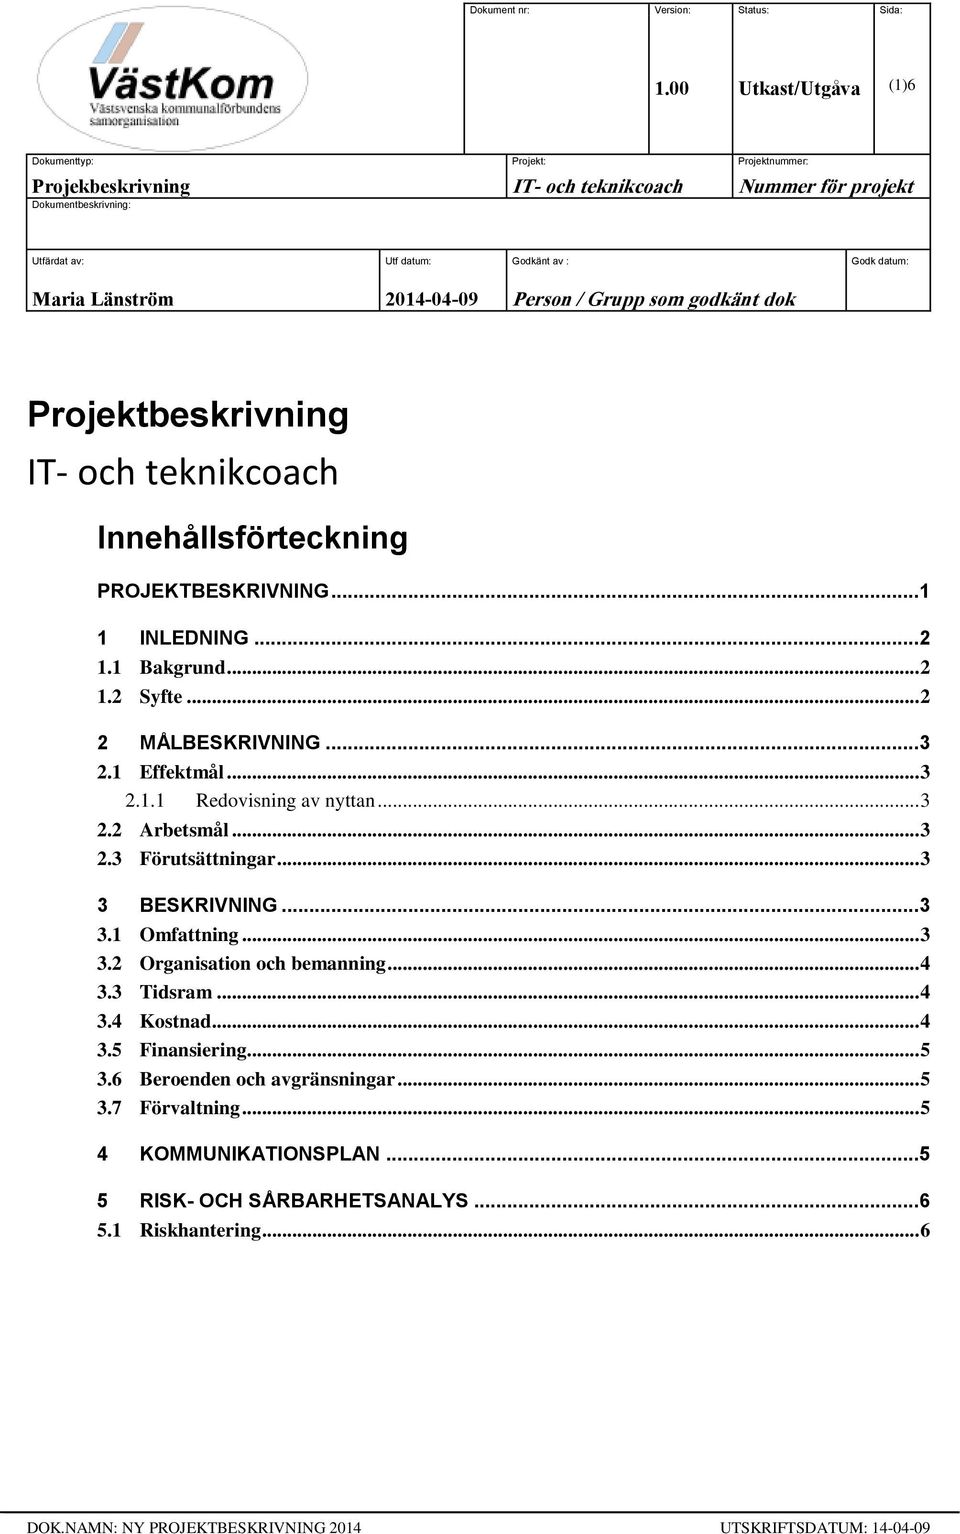 Länström 2014-04-09 Person / Grupp som godkänt dok Projektbeskrivning IT- och teknikcoach Innehållsförteckning PROJEKTBESKRIVNING... 1 1 INLEDNING... 2 1.1 Bakgrund... 2 1.2 Syfte... 2 2 MÅLBESKRIVNING.